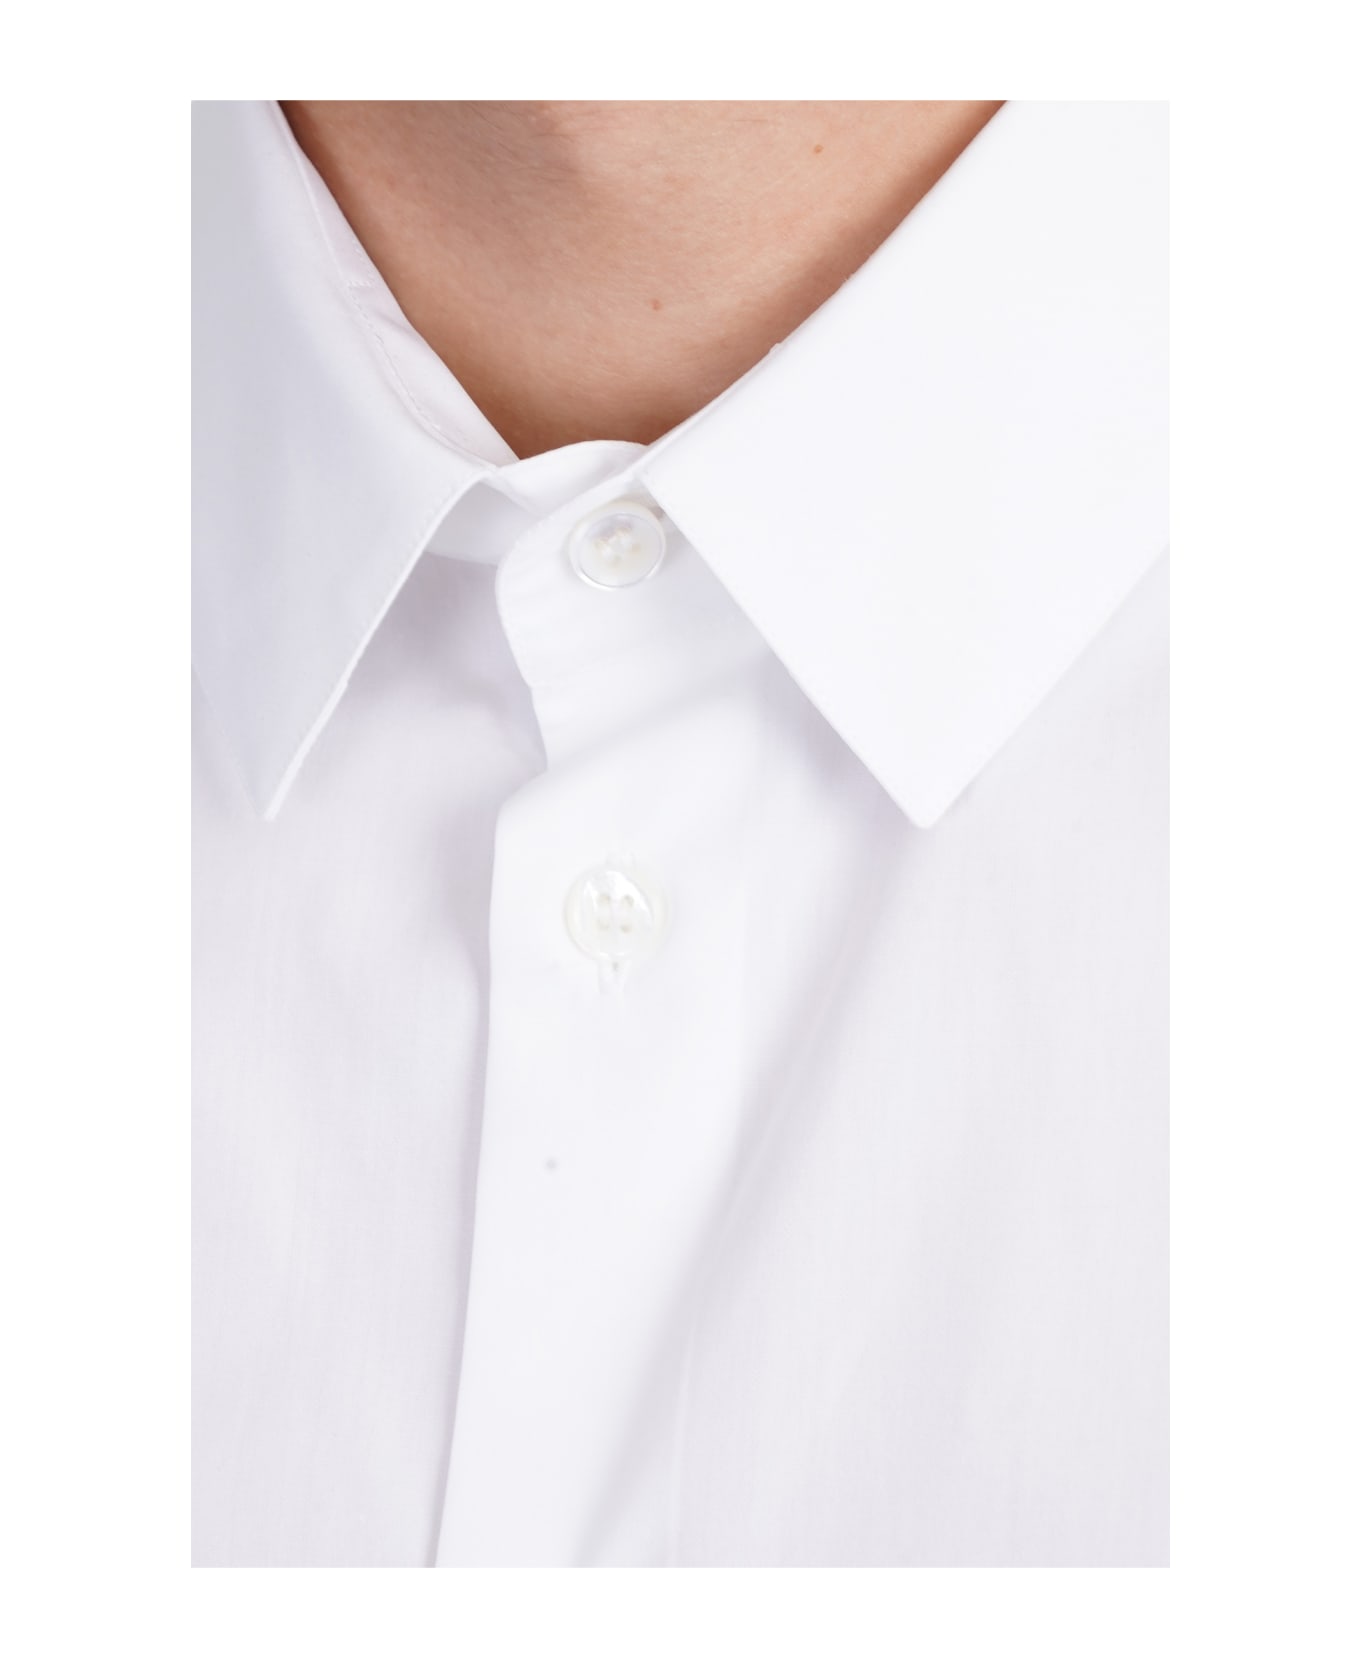 Giorgio Armani Shirt In White Cotton